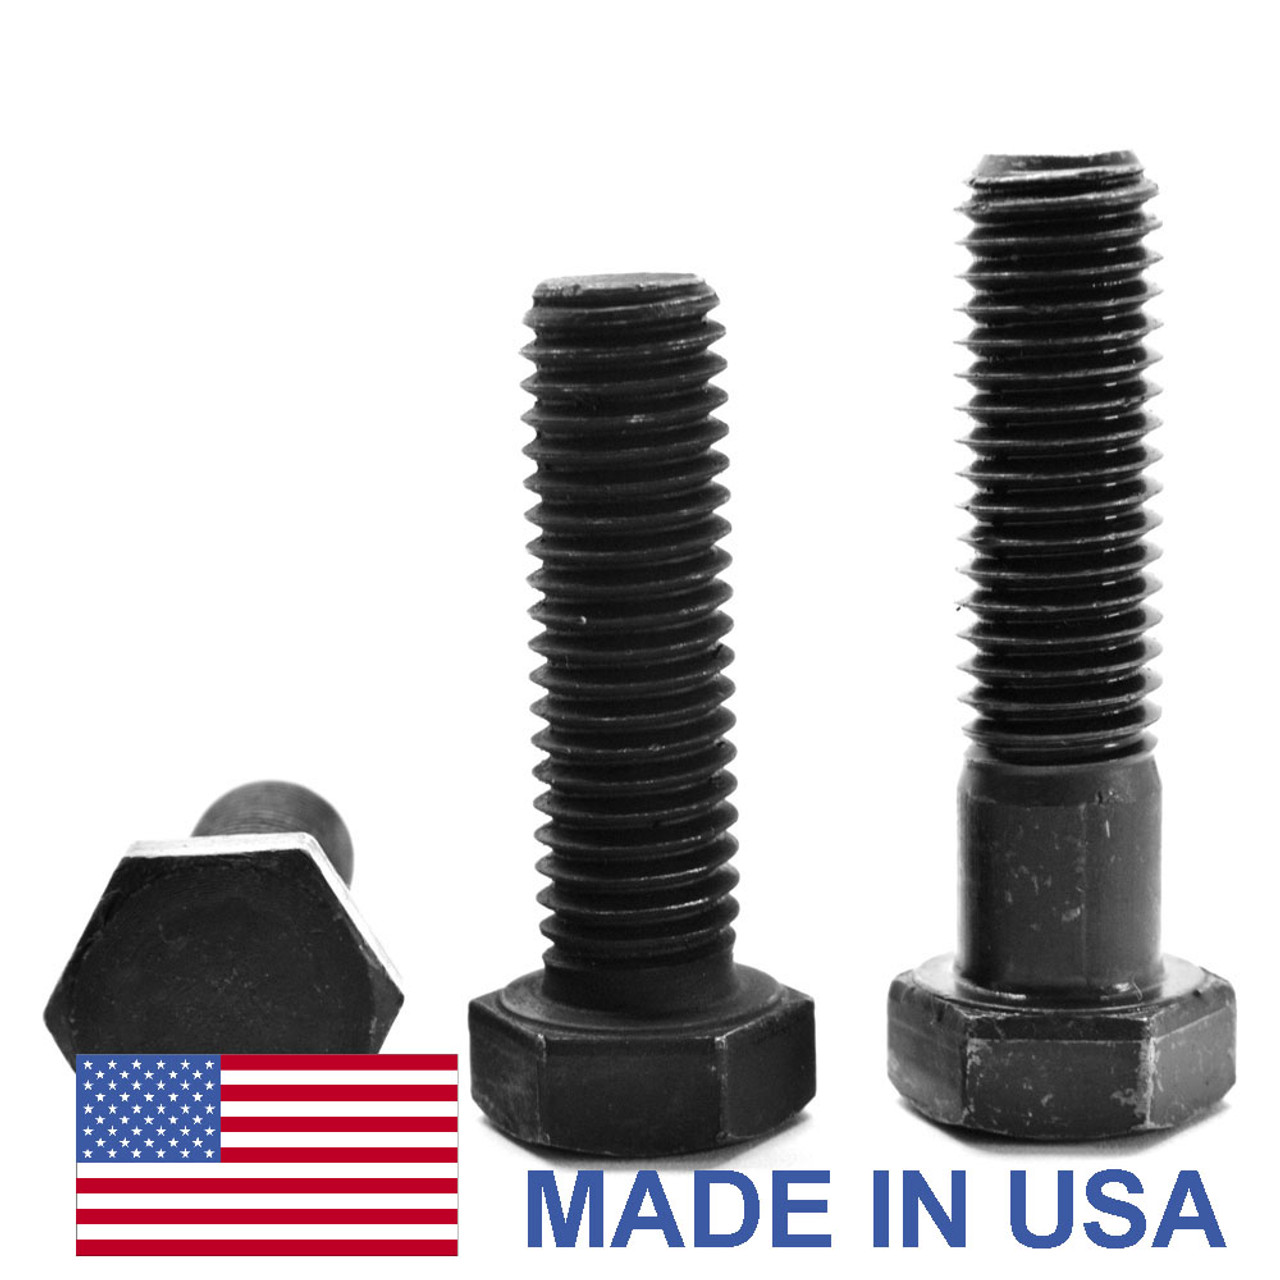 1"-14 x 1 3/4" (FT) UNS Thread Grade 5 Hex Cap Screw (Bolt) - USA Medium Carbon Steel Black Oxide